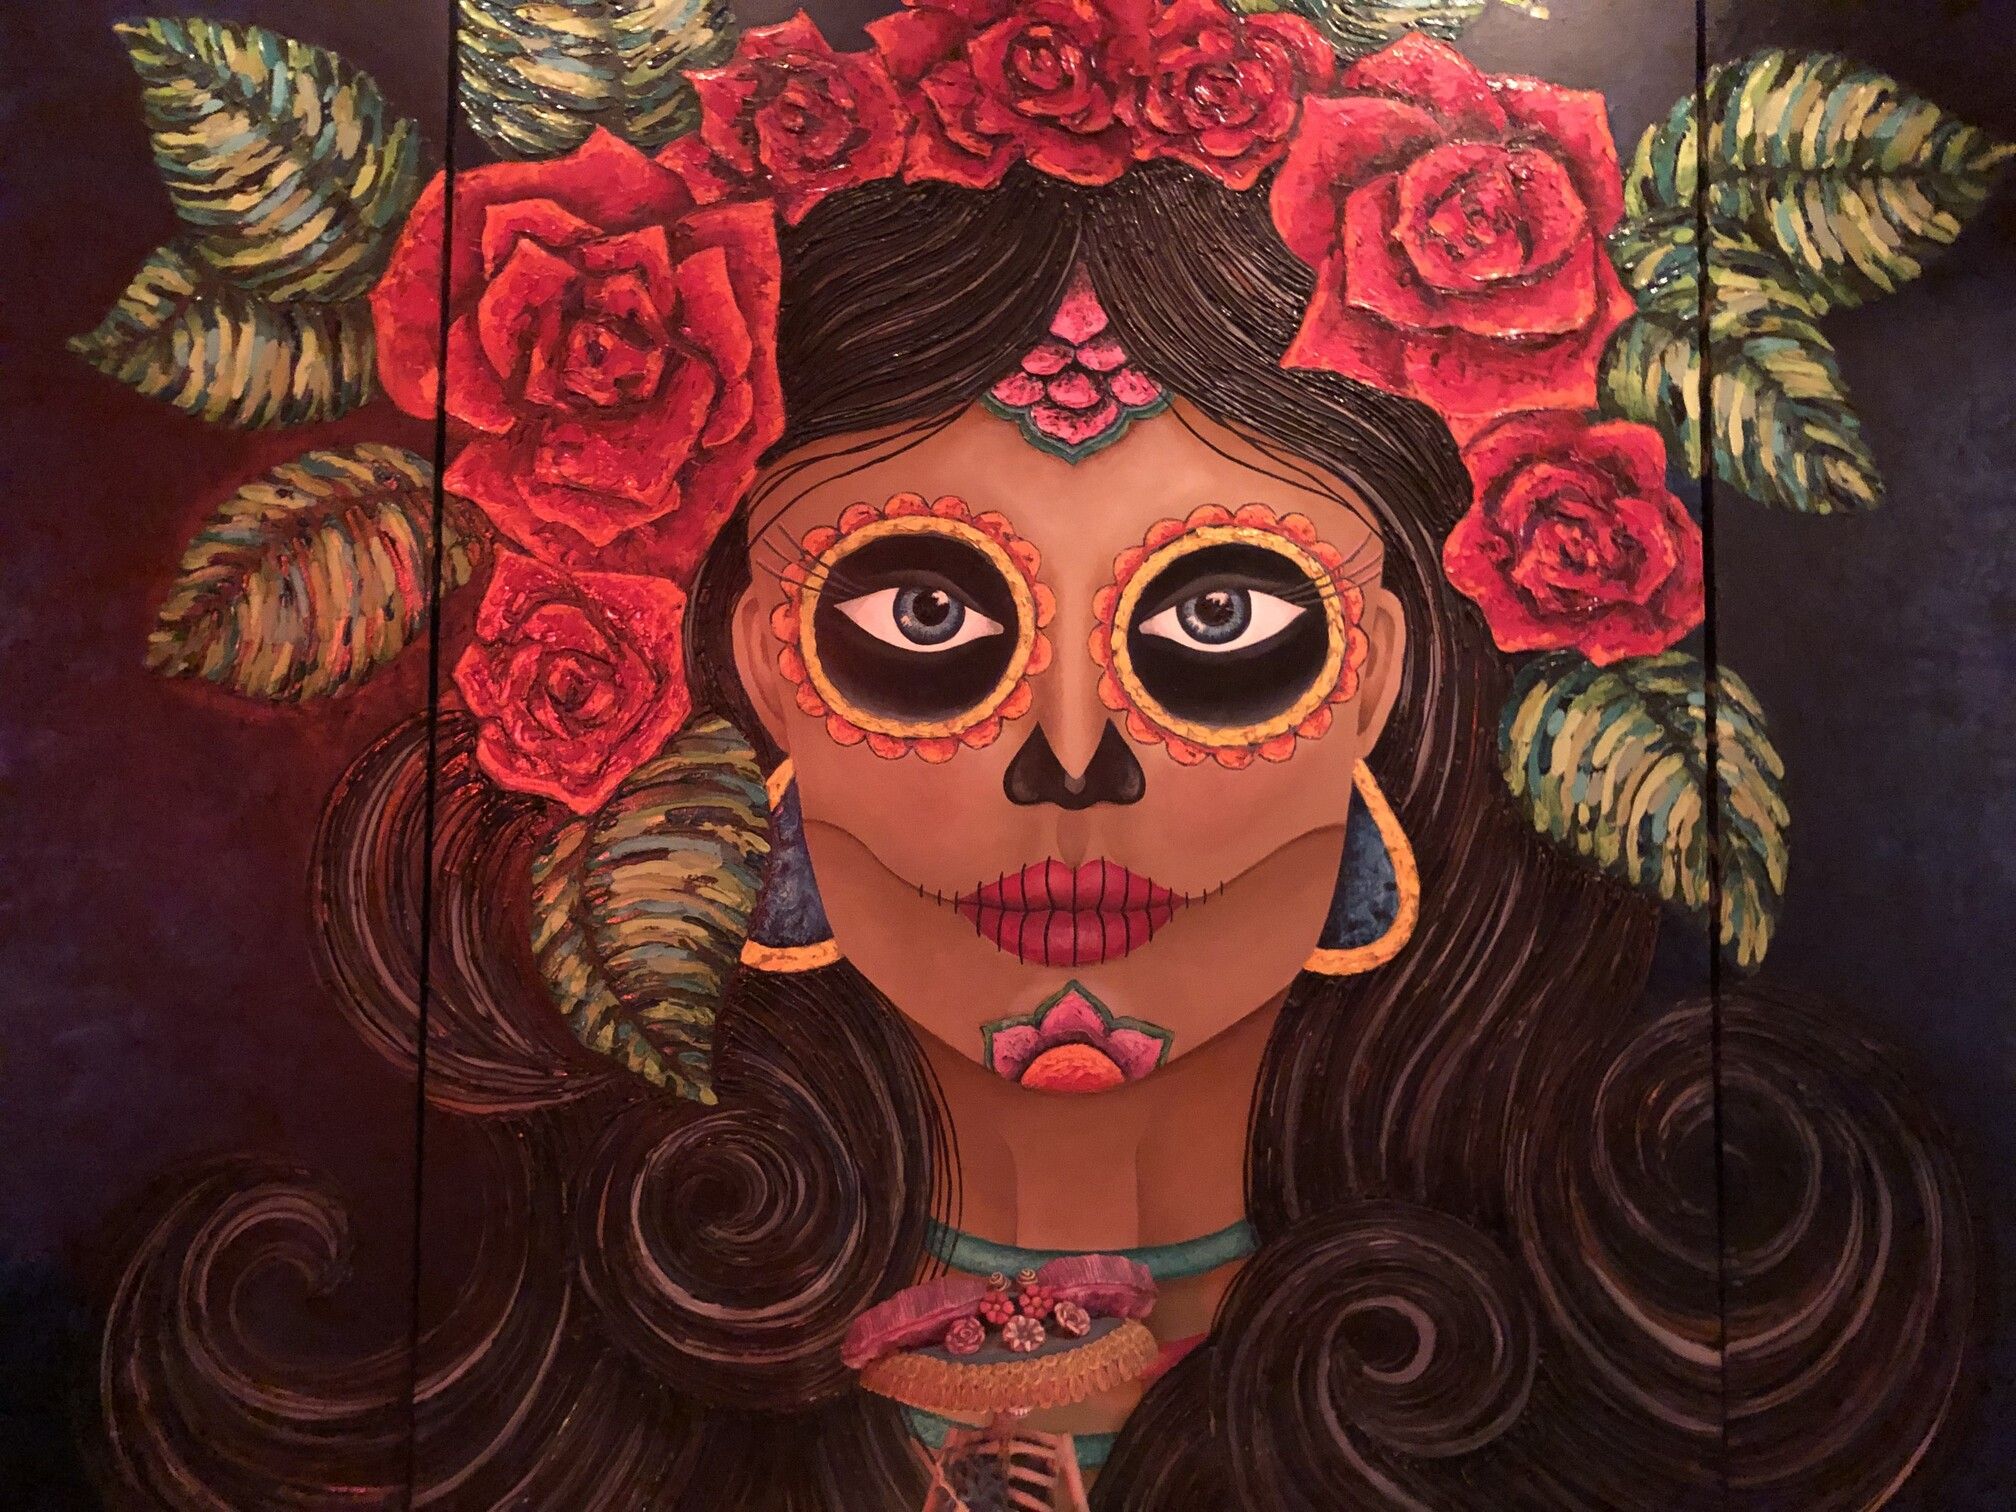 Beautiful painting of Frida Kahlo showing creativity